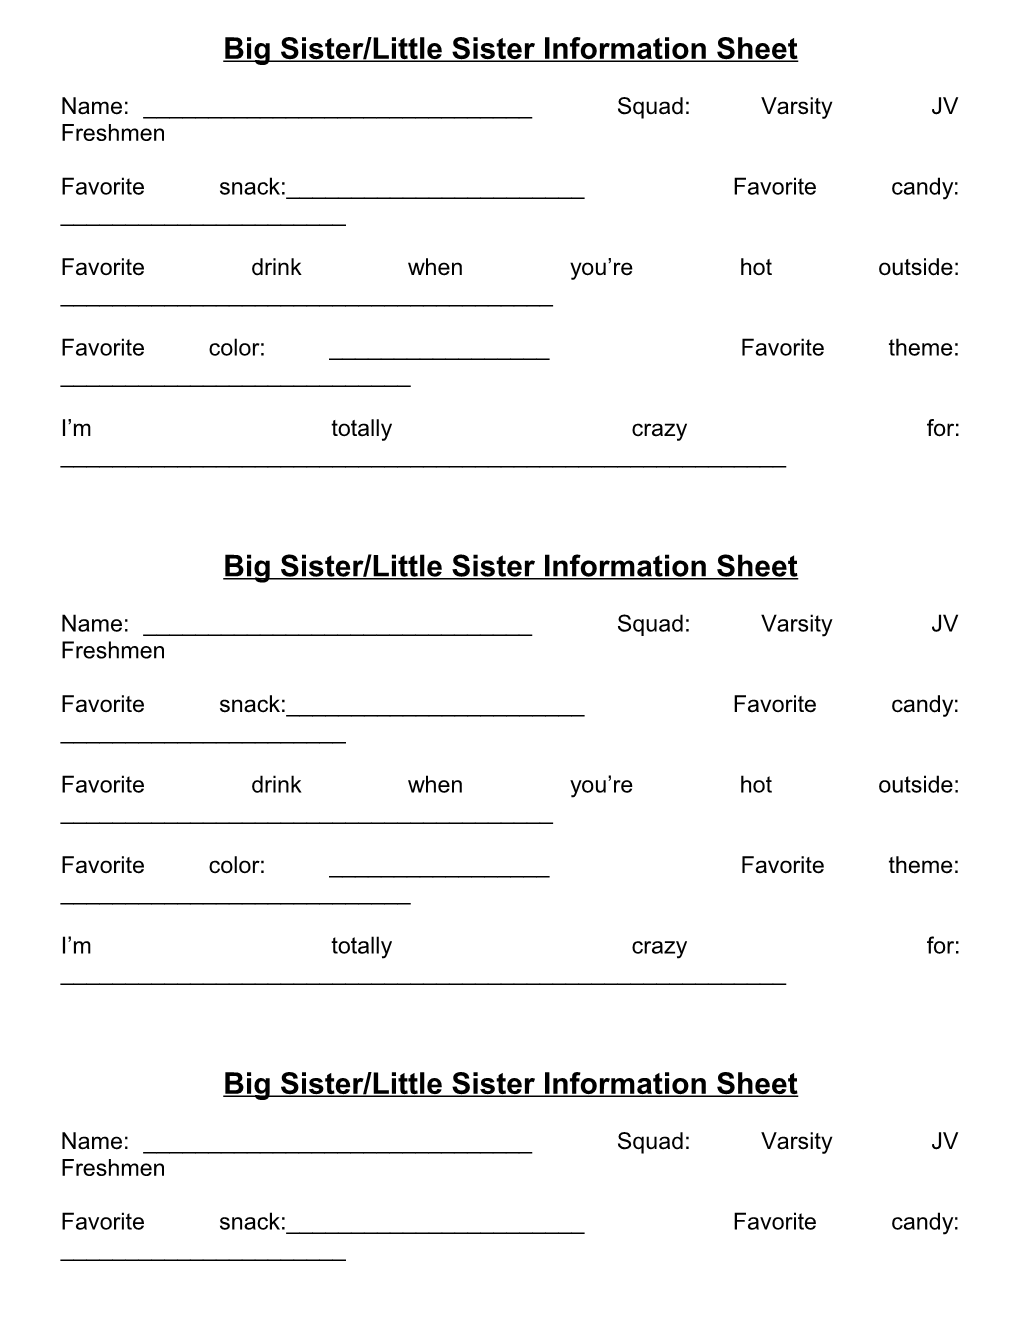 Big Sister/Little Sister Information Sheet